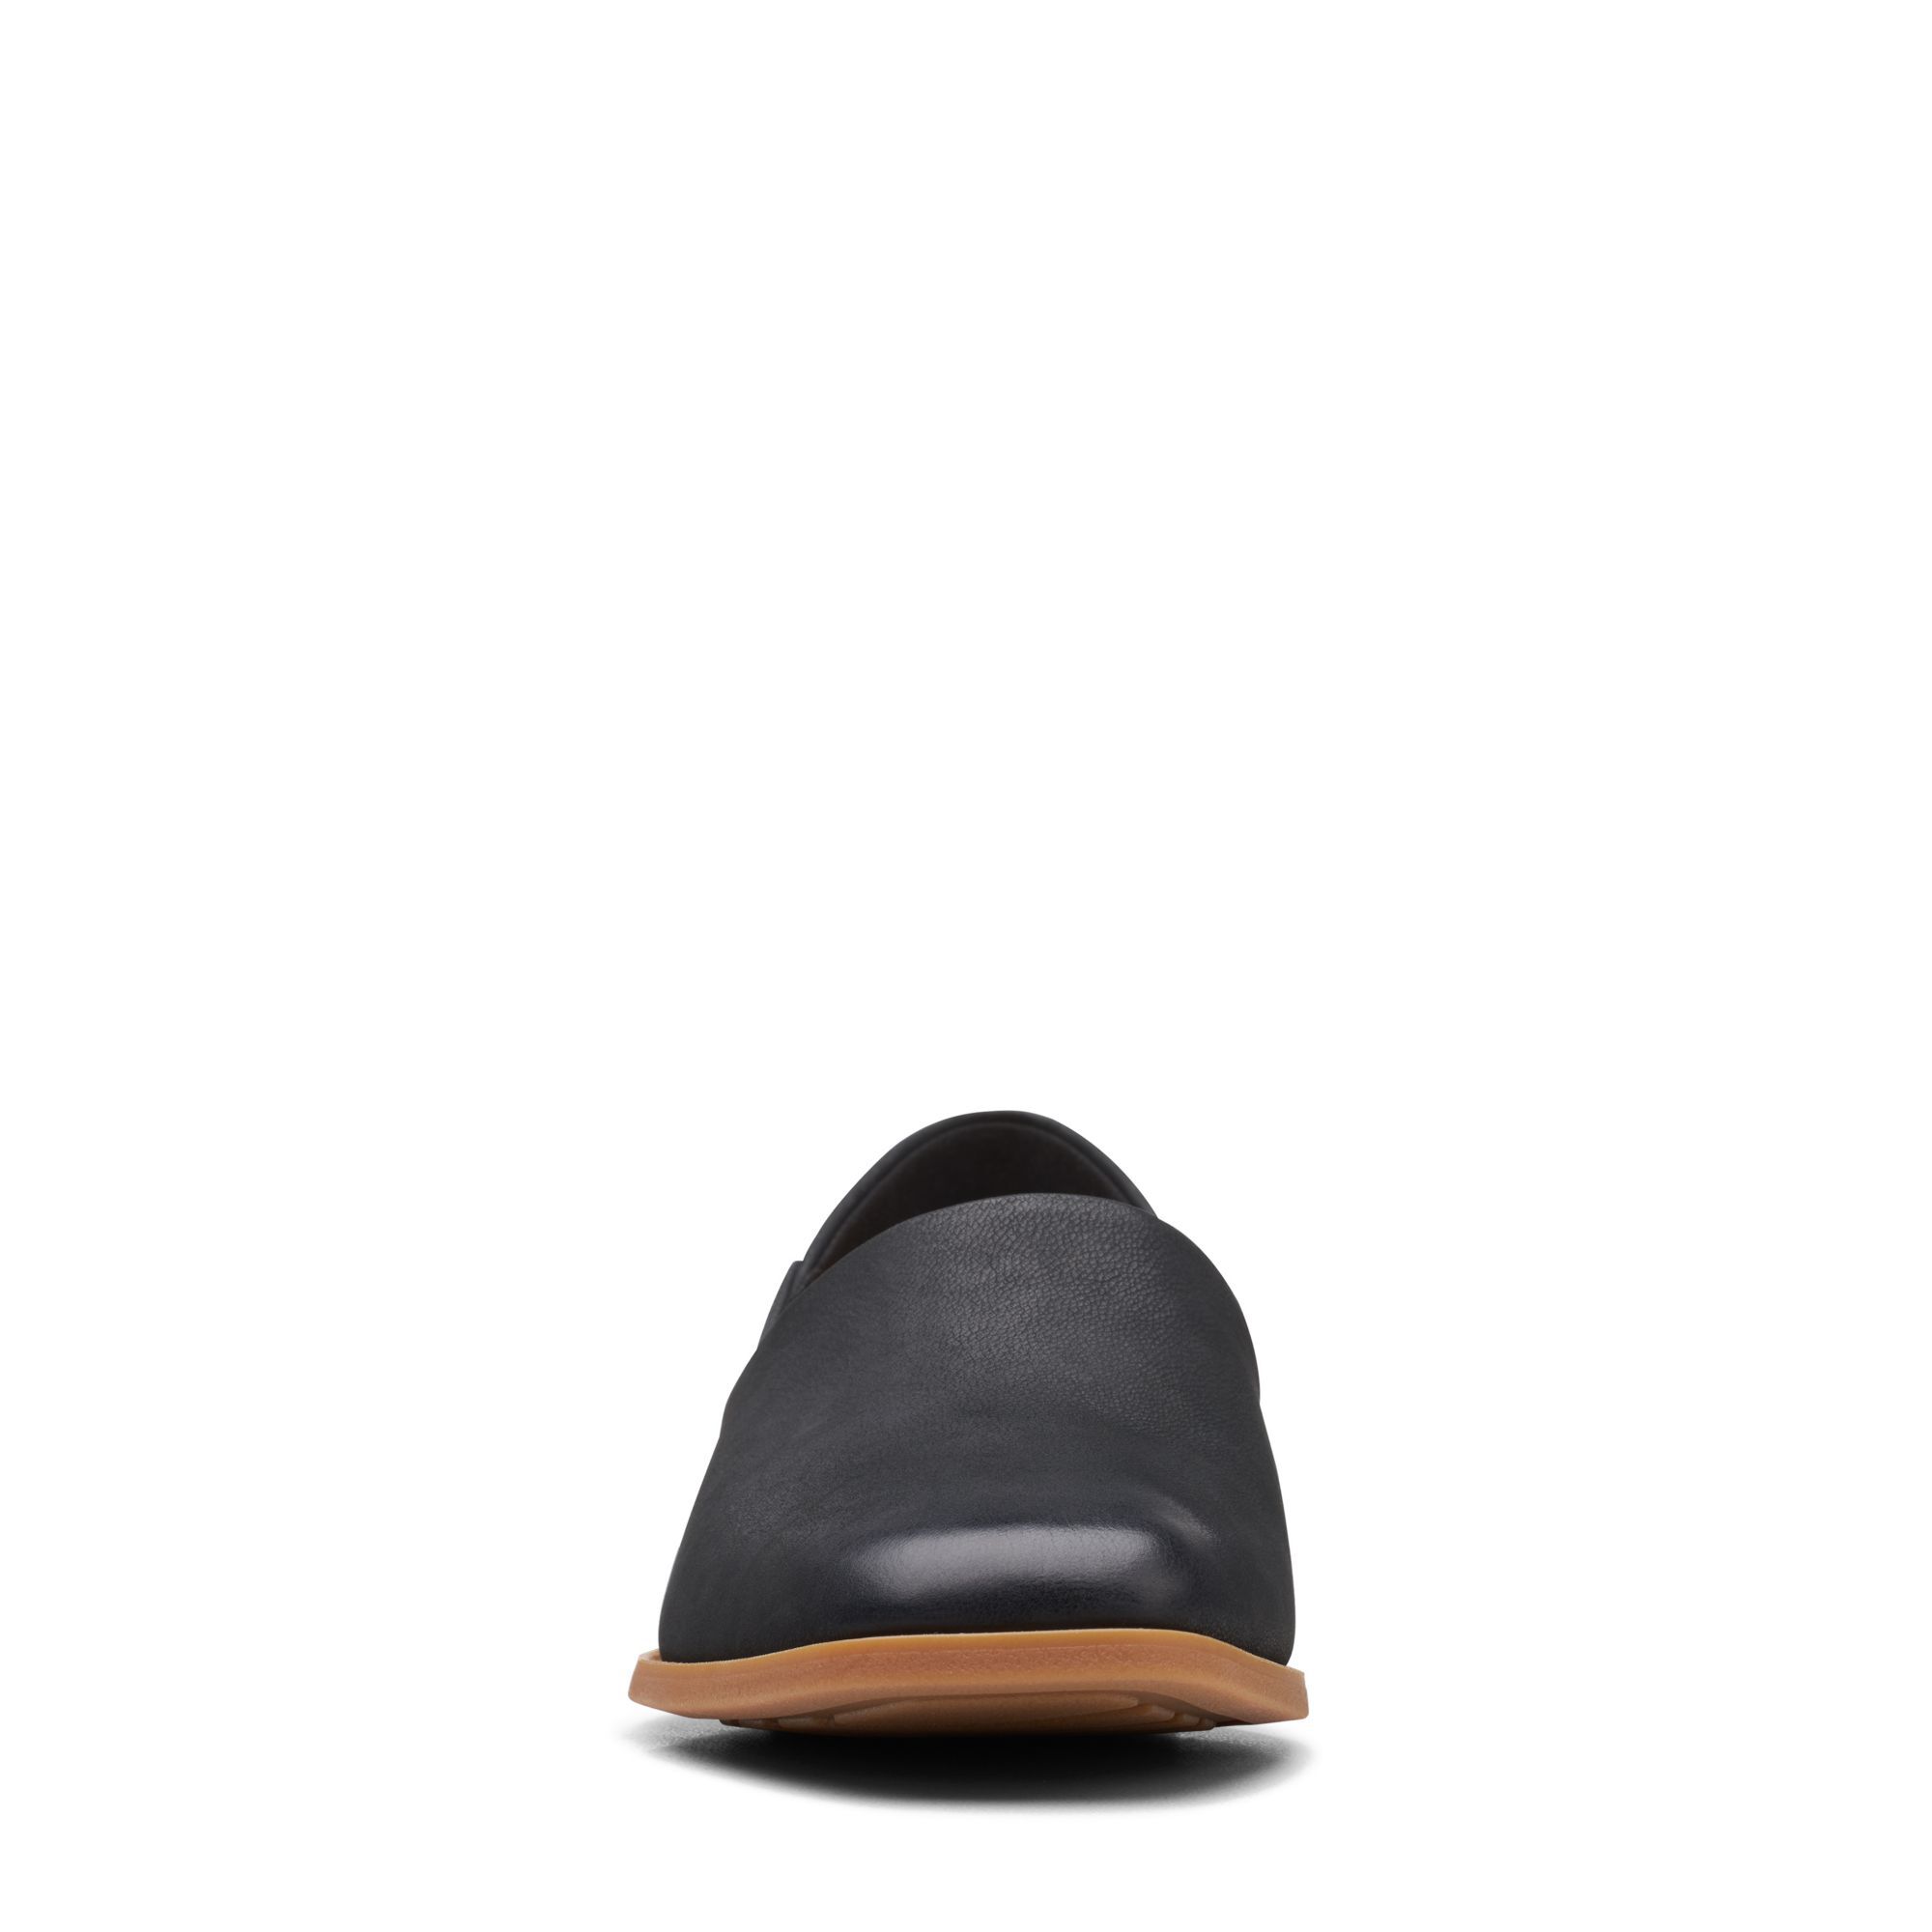 Женские туфли-лодочки Clarks, черные, цвет черный, размер 37.5 - фото 6